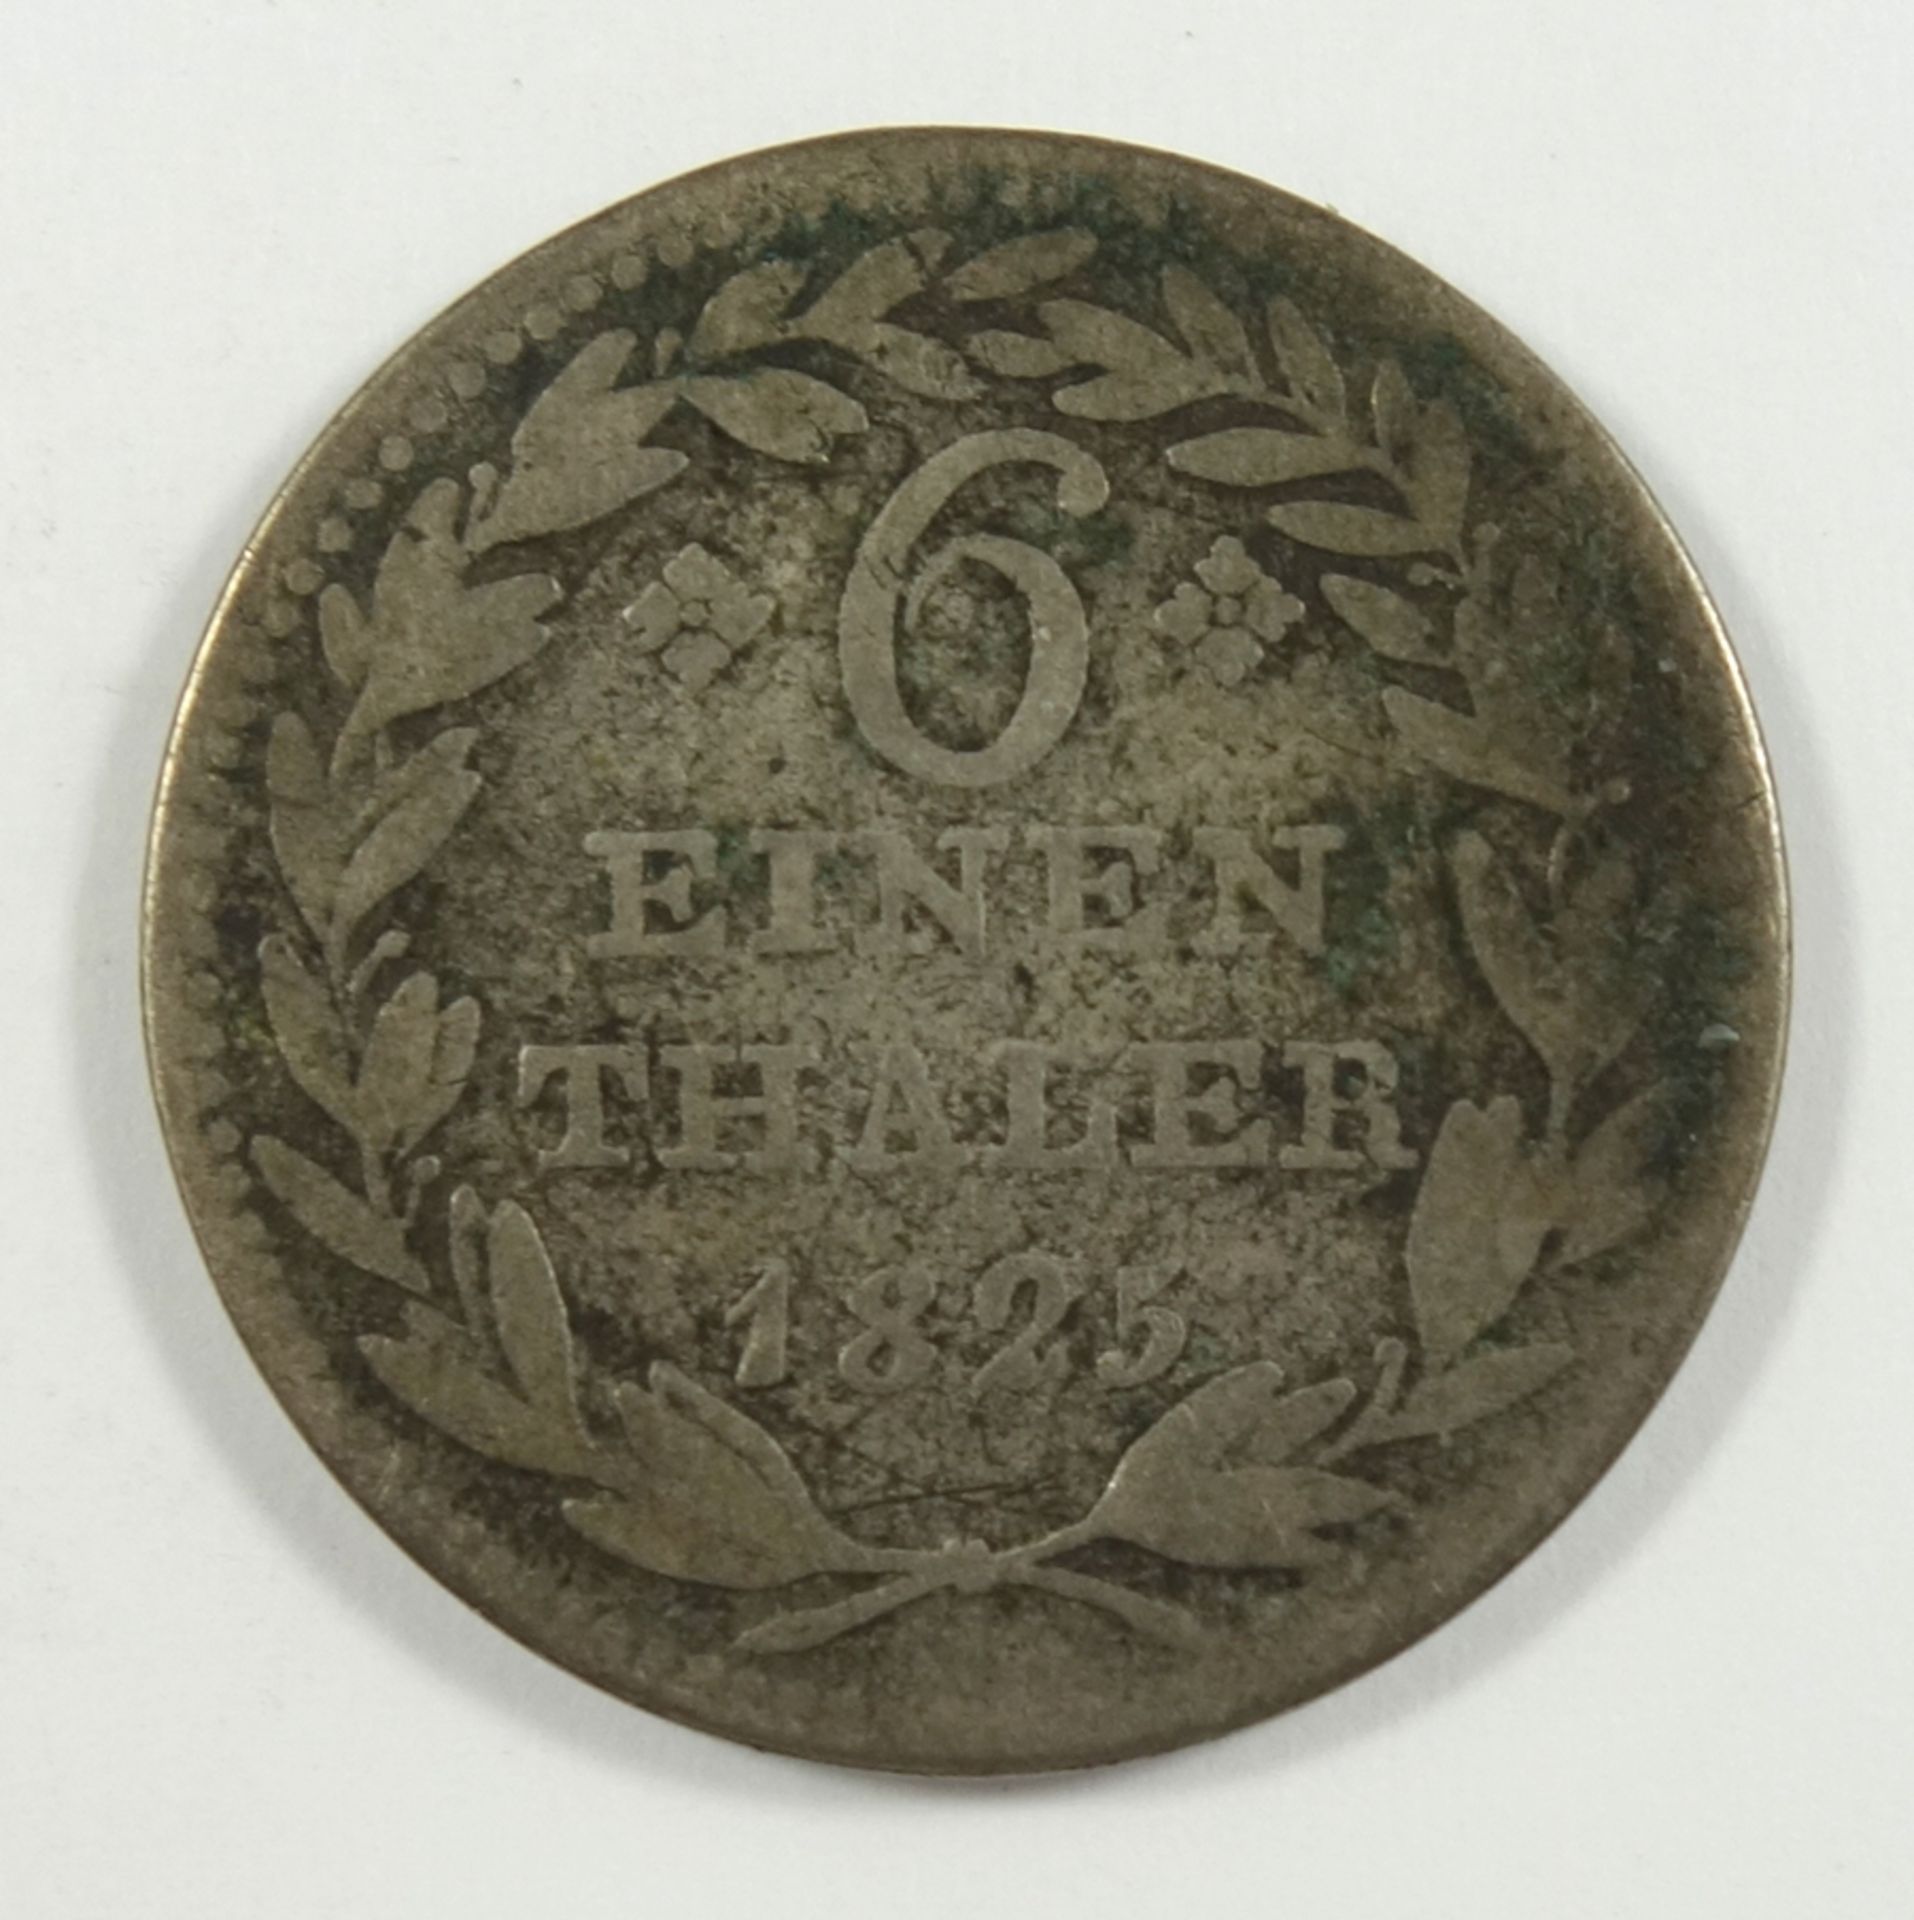 1/6 Taler 1825, Hessen-Kassel, Wilhelm II., Silber, ss